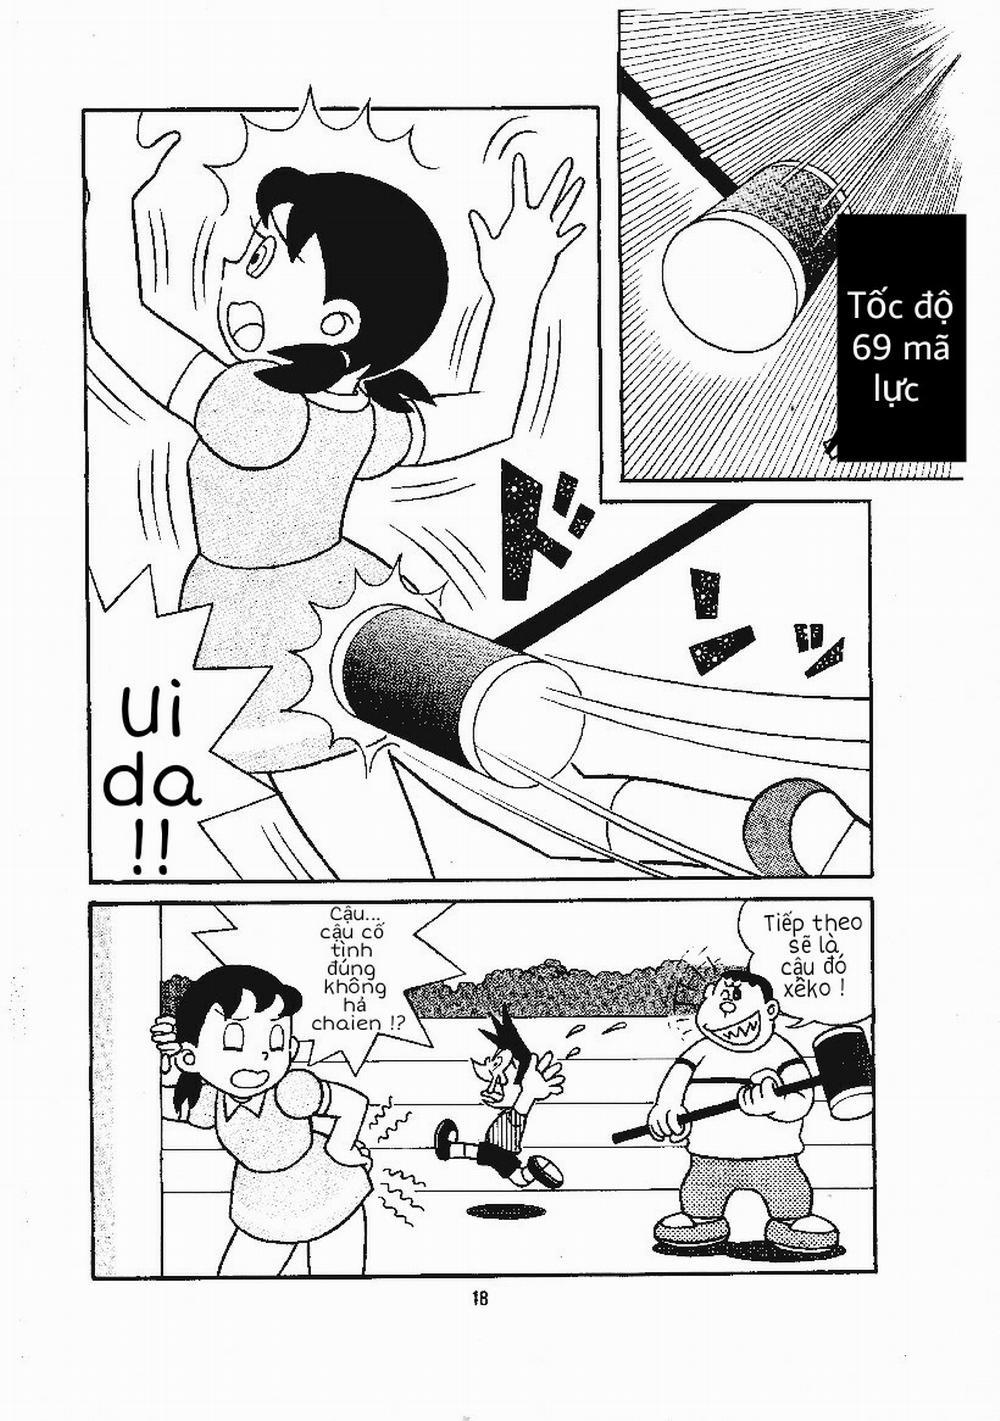 Tuyển Tập Doraemon Doujinshi 18+ Chương 15 B n d i c a Xuka Trang 2